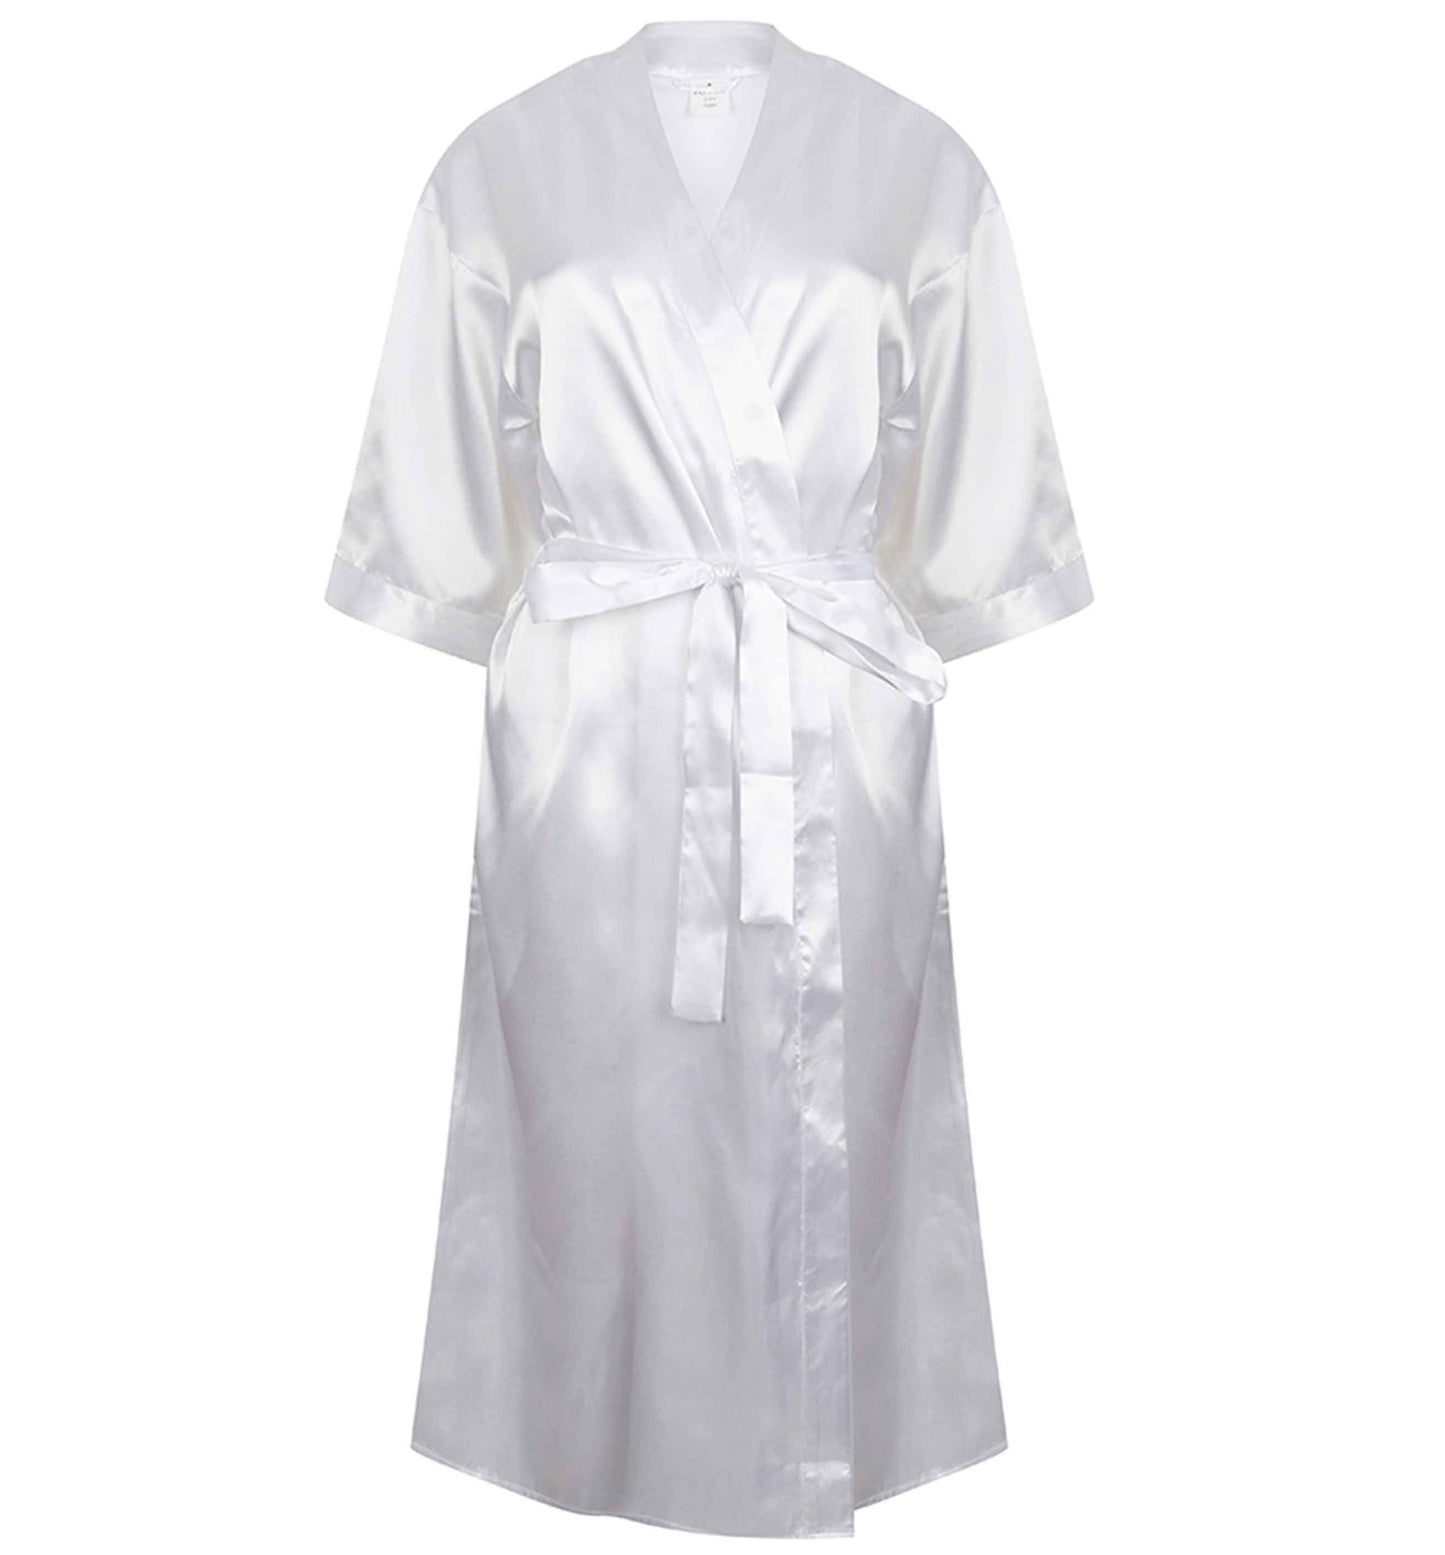 Future bride to be announced | 8-18 | Kimono style satin robe | Ladies dressing gown